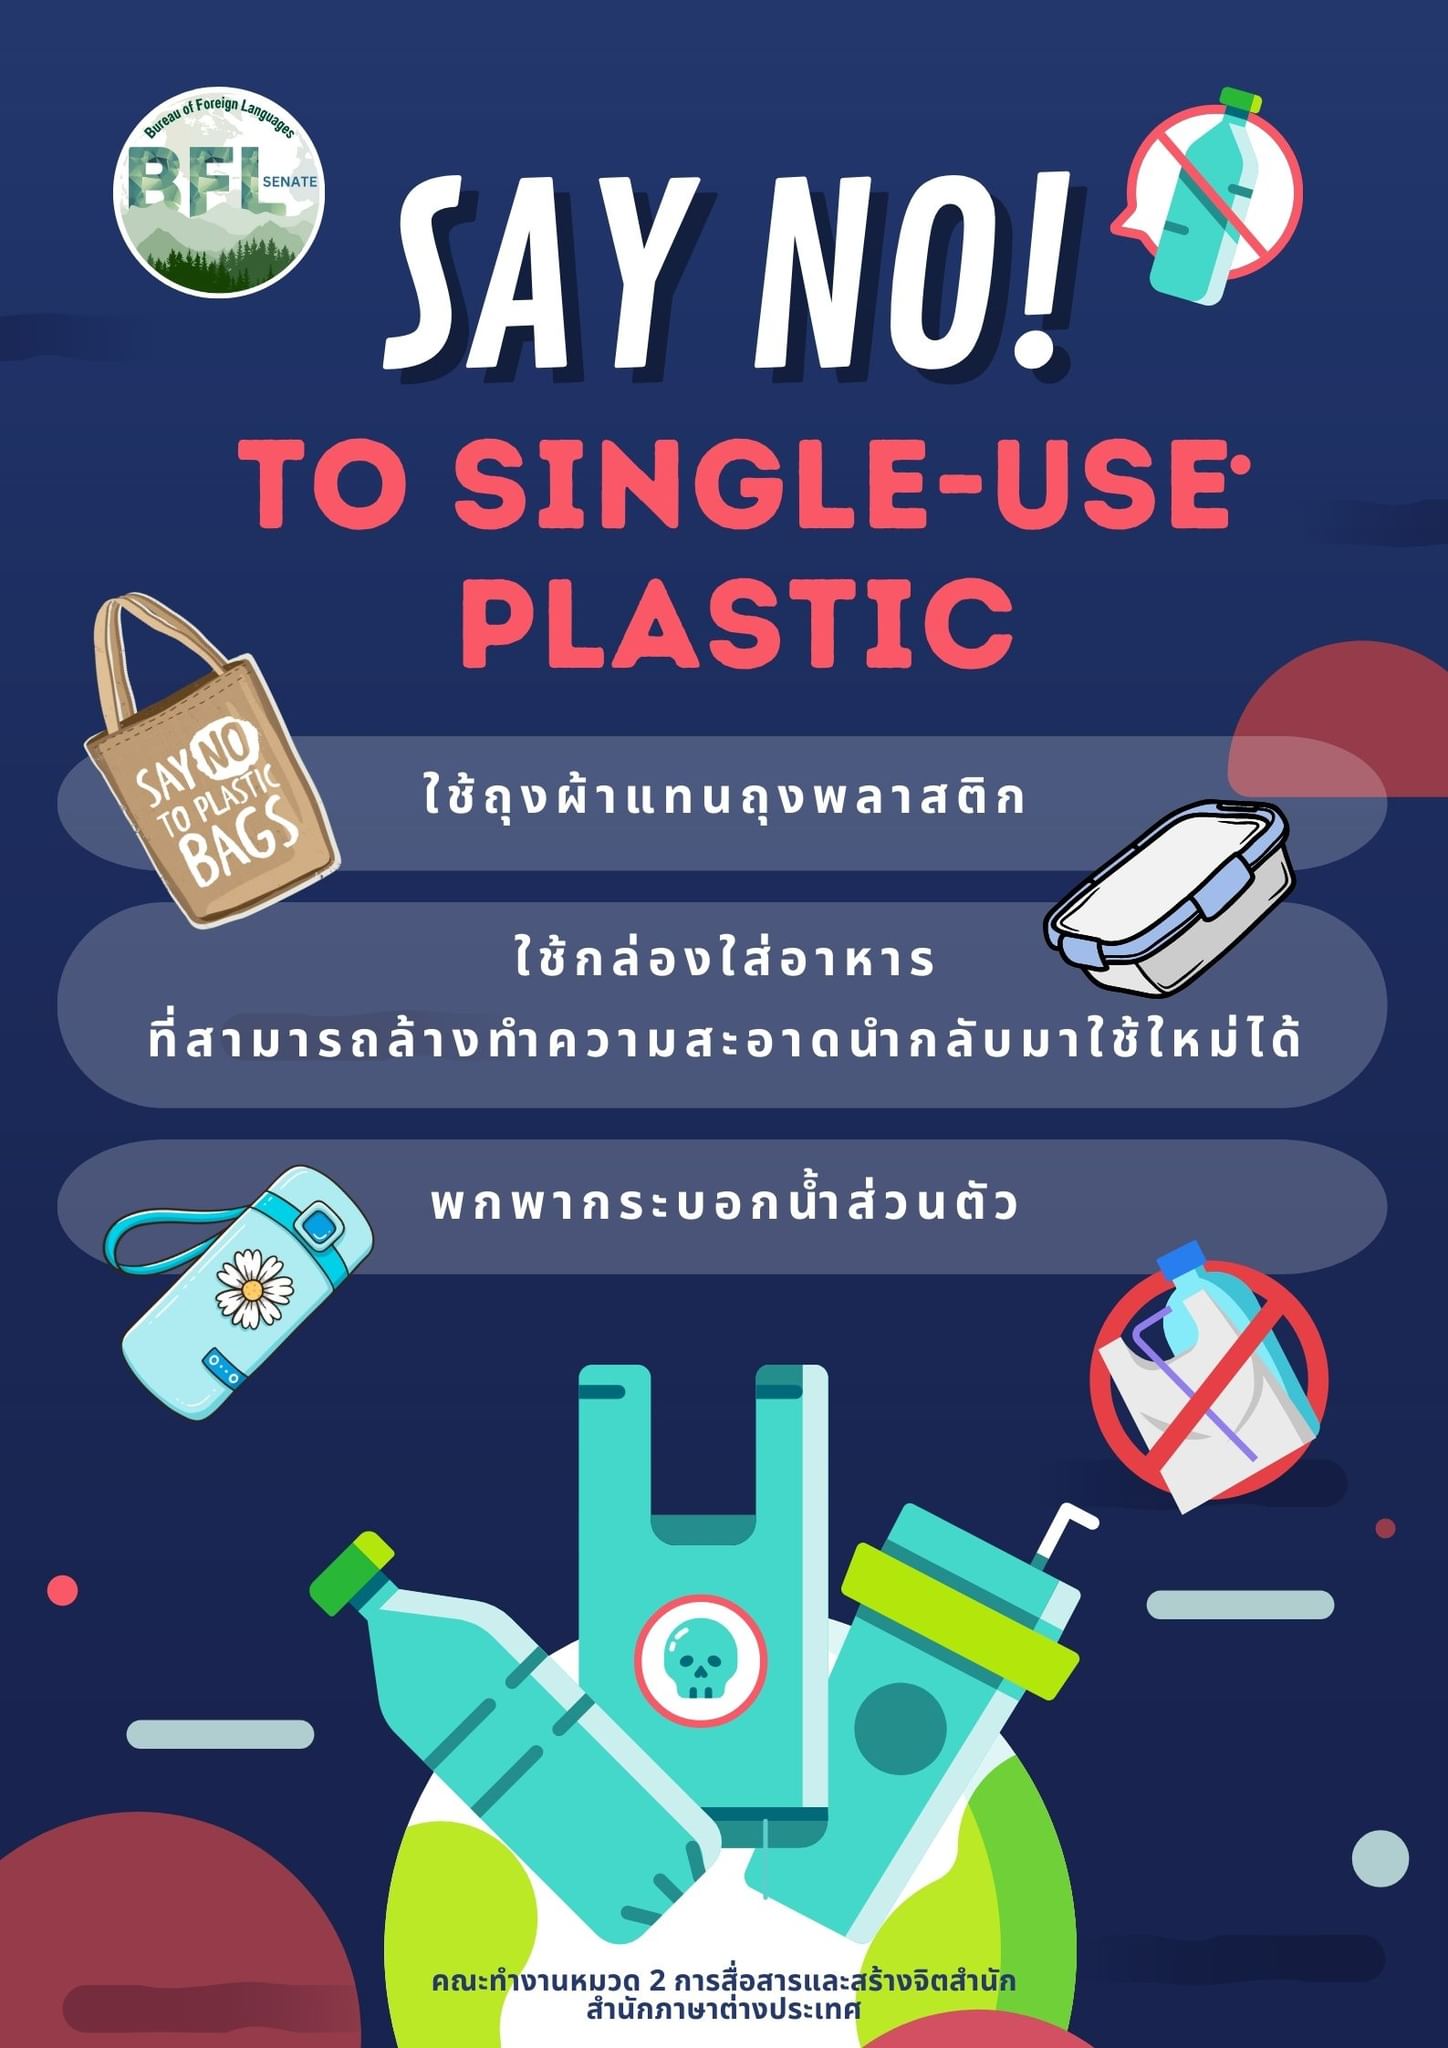 คณะทำงานหมวด 2 การสื่อสารและสร้างจิตสำนึก สำนักภาษาต่างประเทศ ขอรณรงค์ให้ทุกท่านลด ละ เลิกการใช้พลาสติกแบบใช้ครั้งเดียวทิ้ง (Single-Use Plastic) งดใช้กล่องโฟมบรรจุอาหารและพลาสติกแบบใช้ครั้งเดียวทิ้ง รวมทั้งลดการใช้ถุงพลาสติกหูหิ้ว ปรับเปลี่ยนพฤติกรรมมาใช้